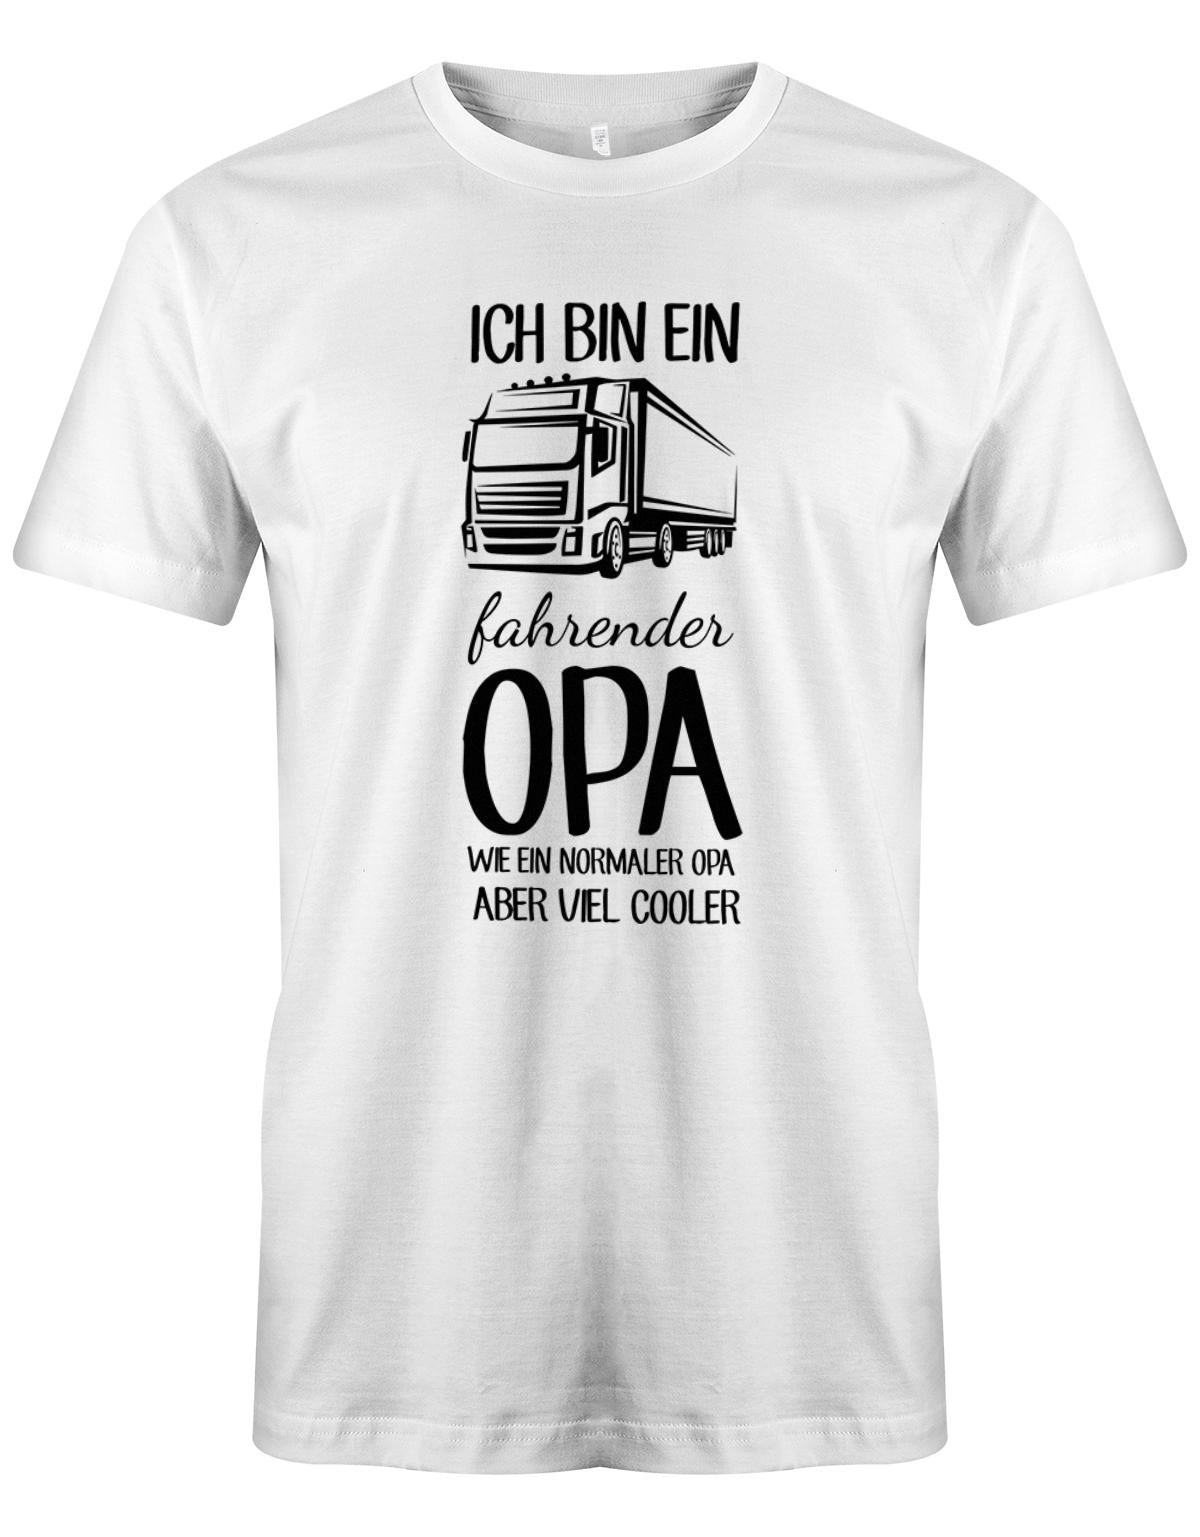 Ich bin ein LKW fahrender Opa wie ein normaler Opa aber viel cooler - Kraftfahrer - Herren T-Shirt Weiss